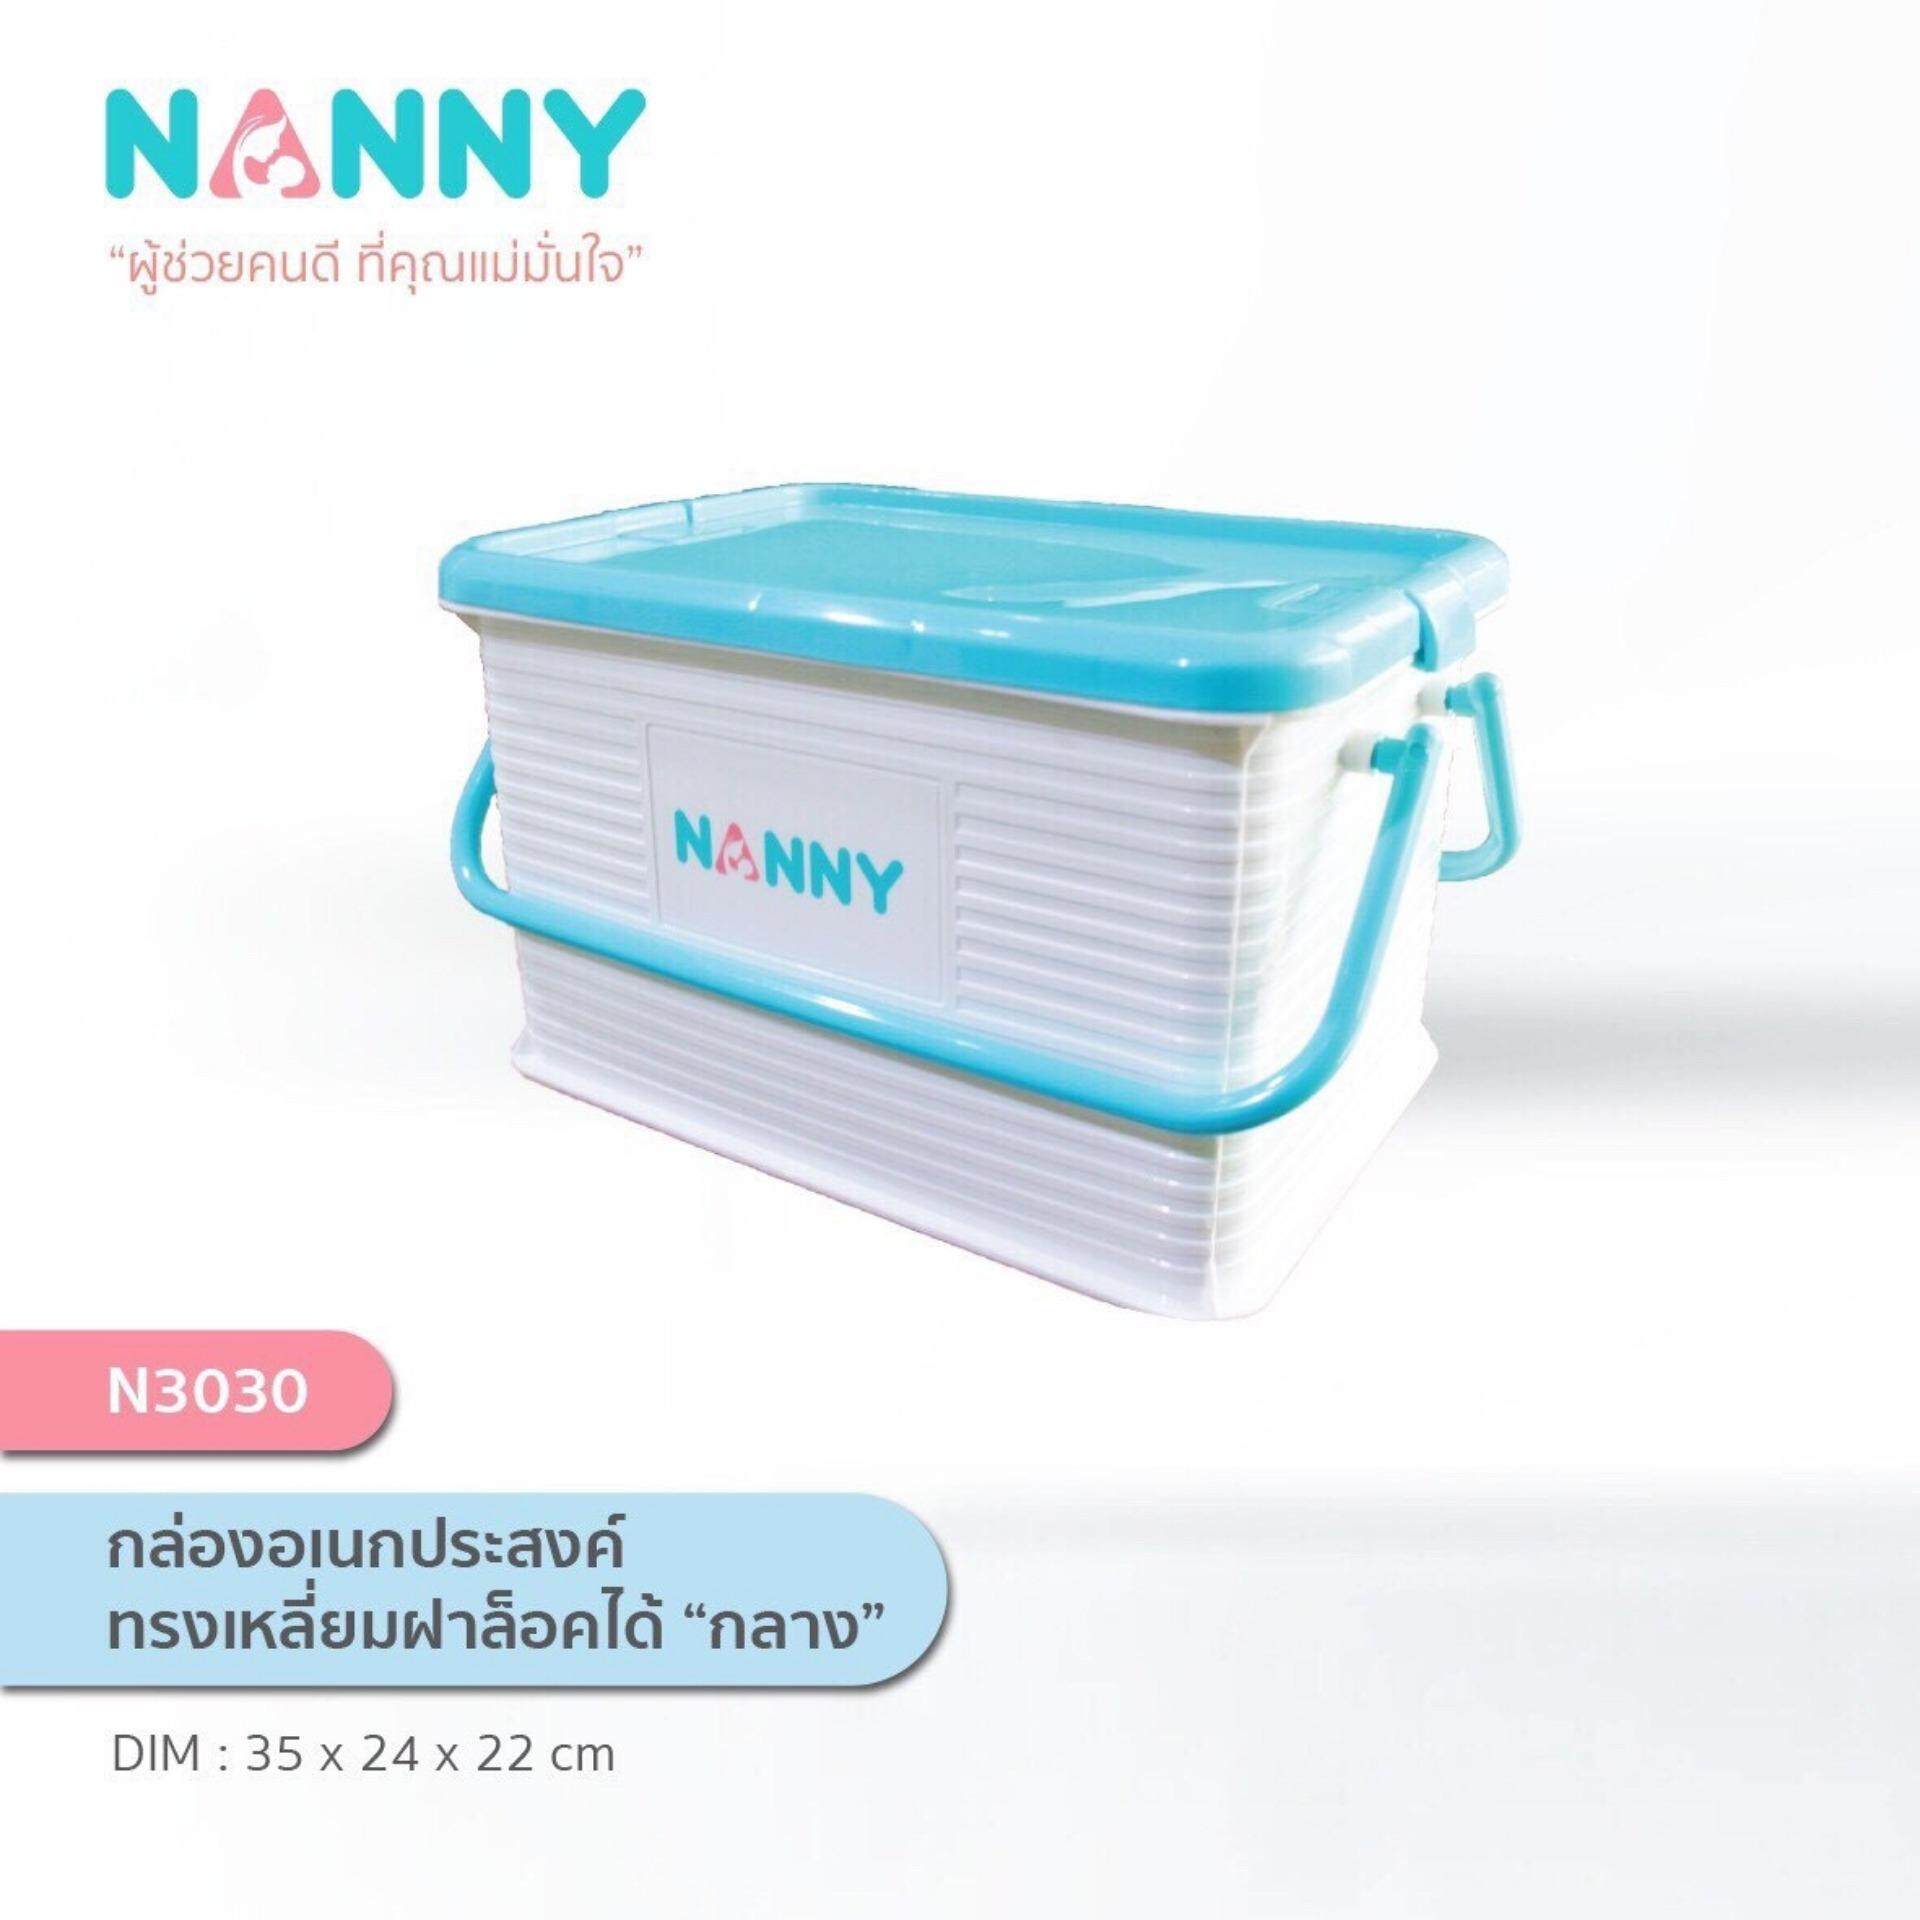 NANNY กล่องคอนเทนเนอร์ กล่องเก็บของเอนกประสงค์ รุ่น 3030